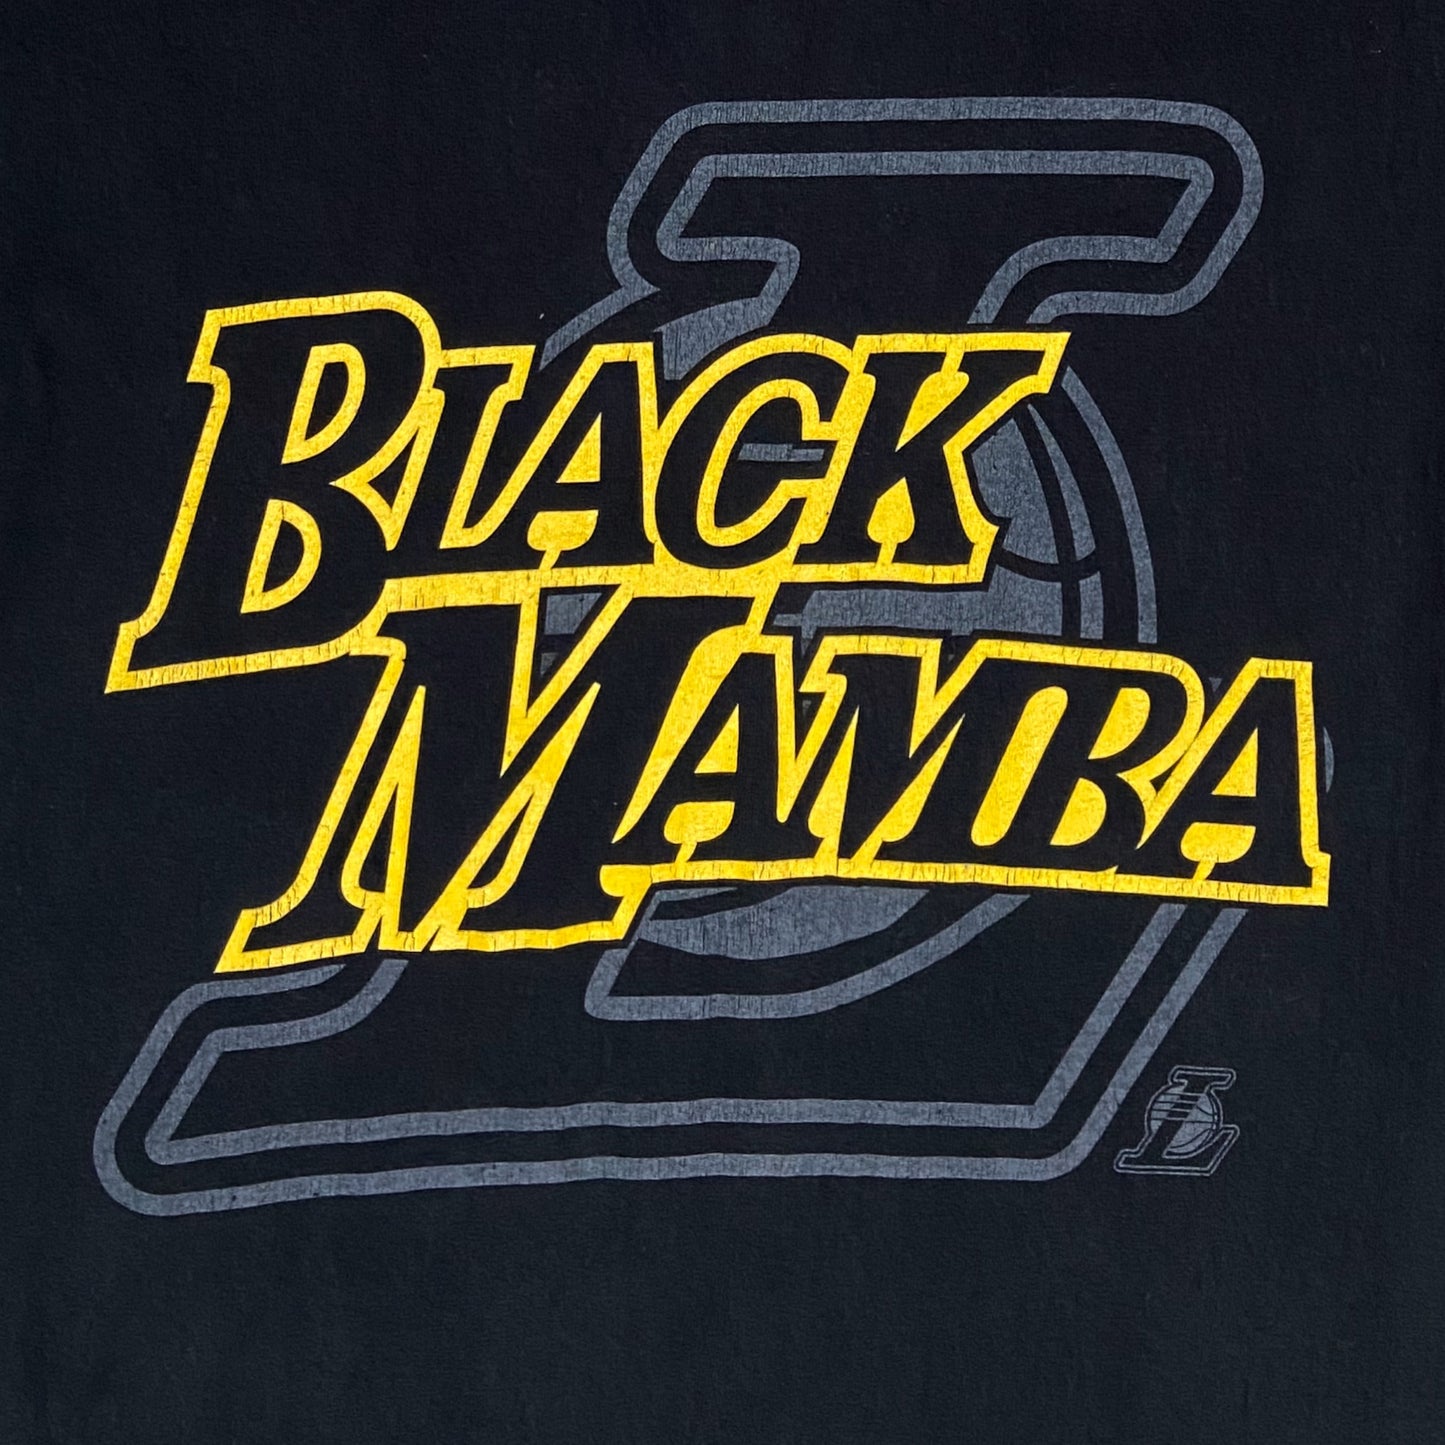 Kobe Bryant black mamba t-shirt - S